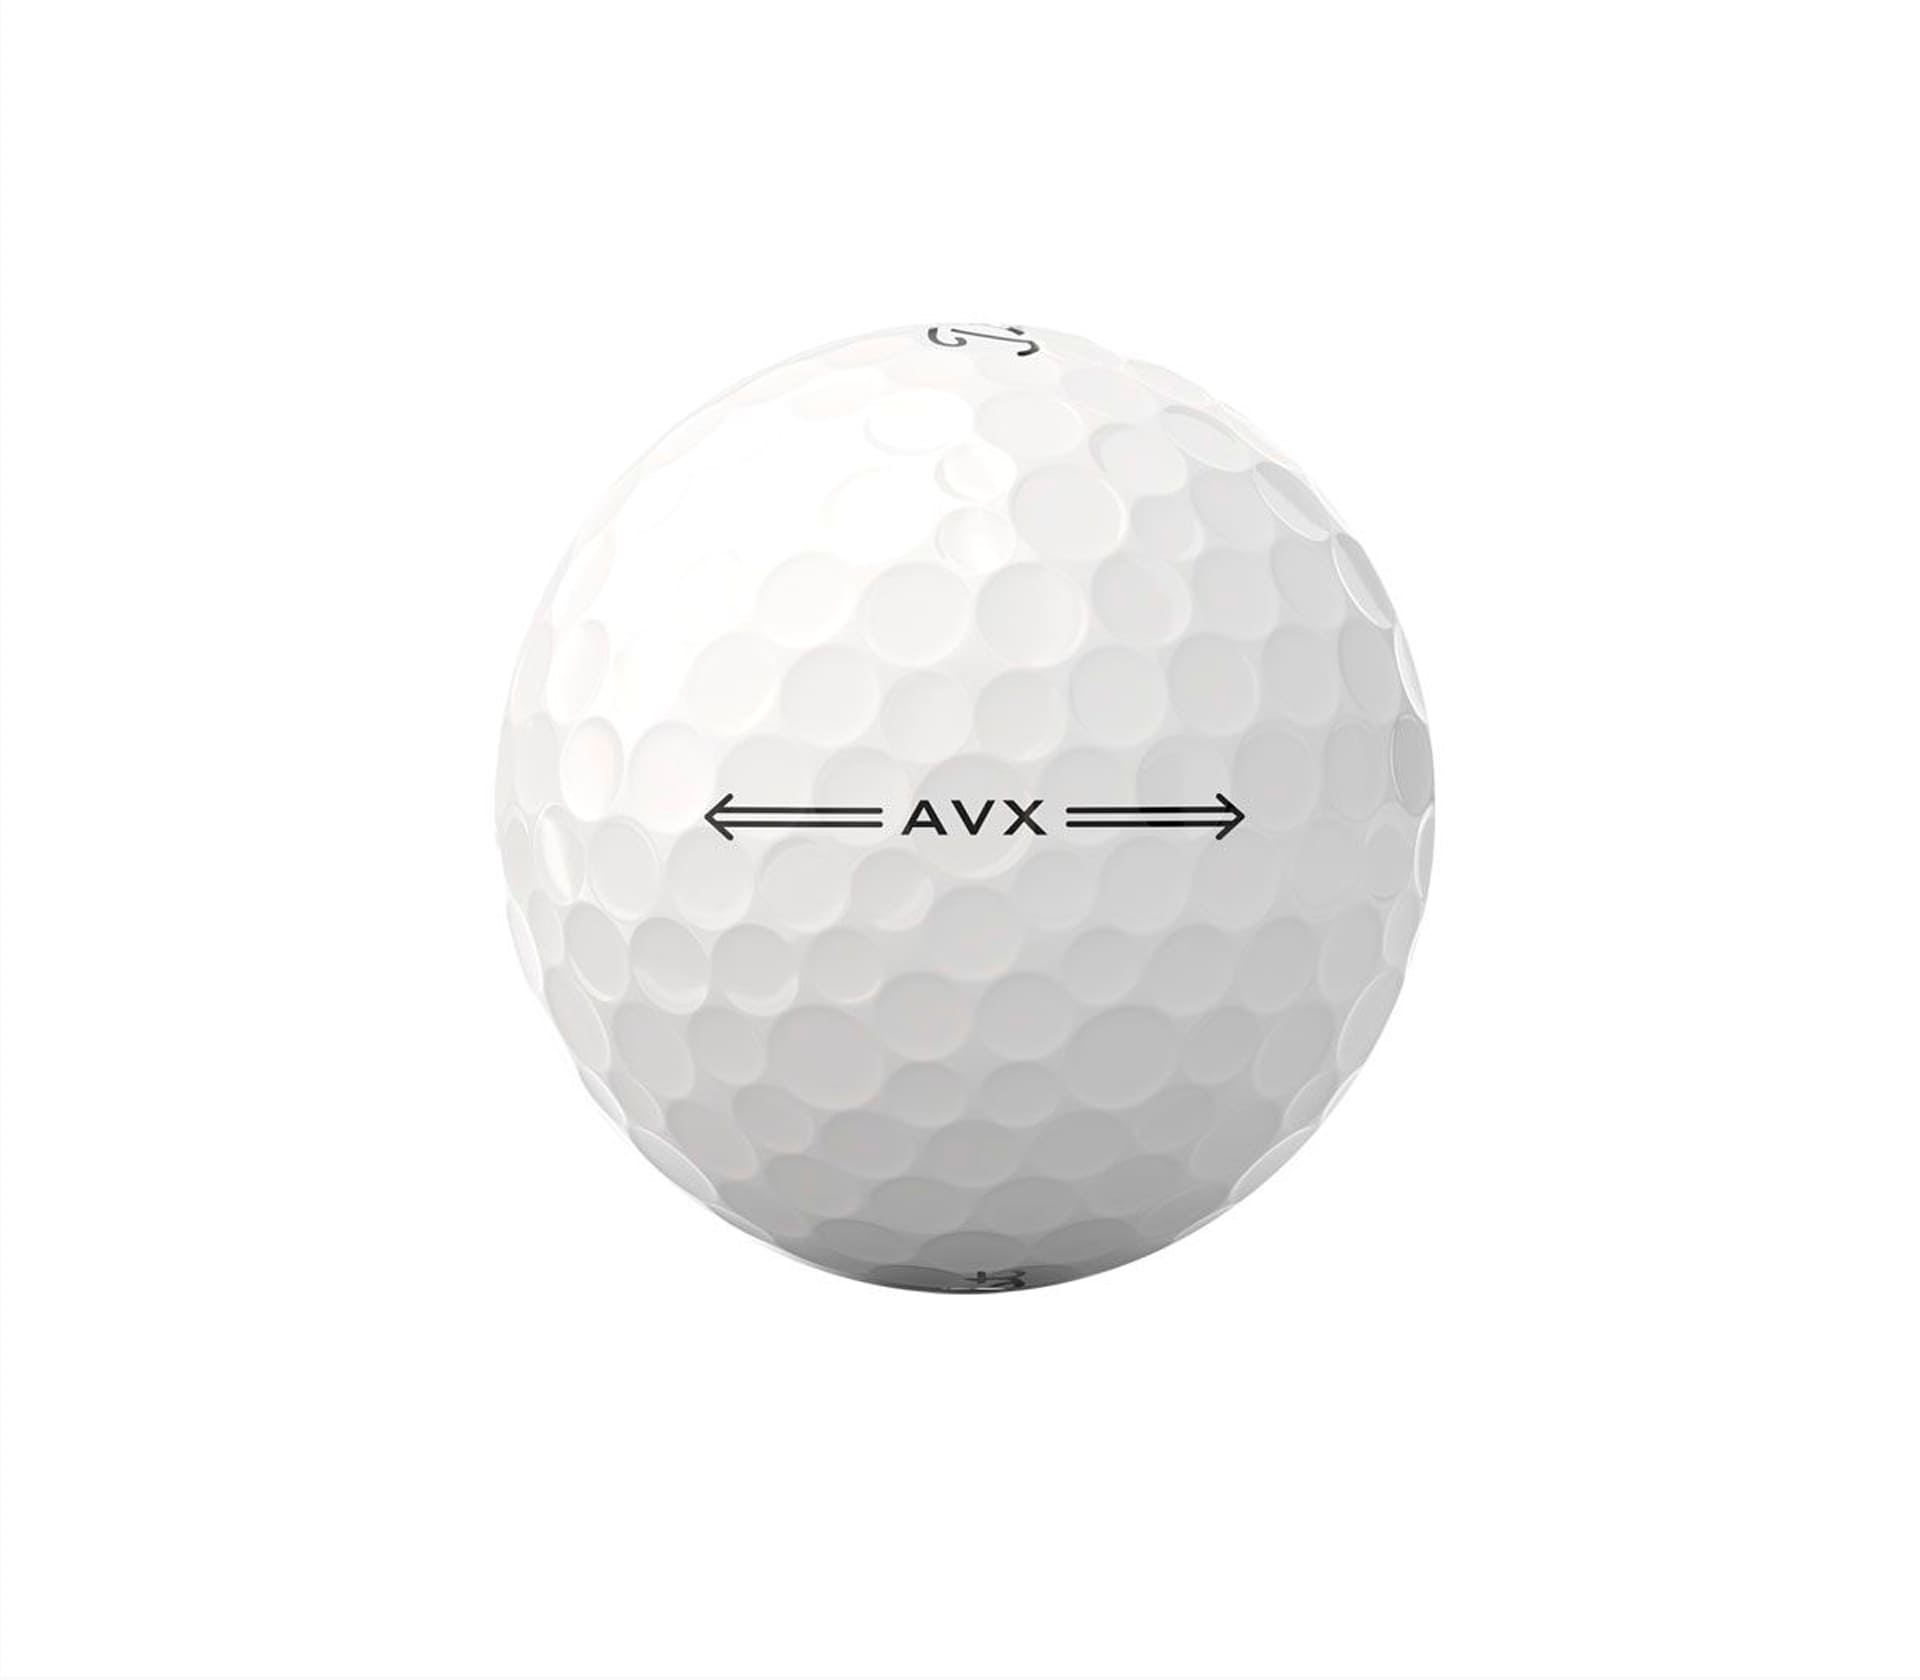 AVX - Caixa 3 unid